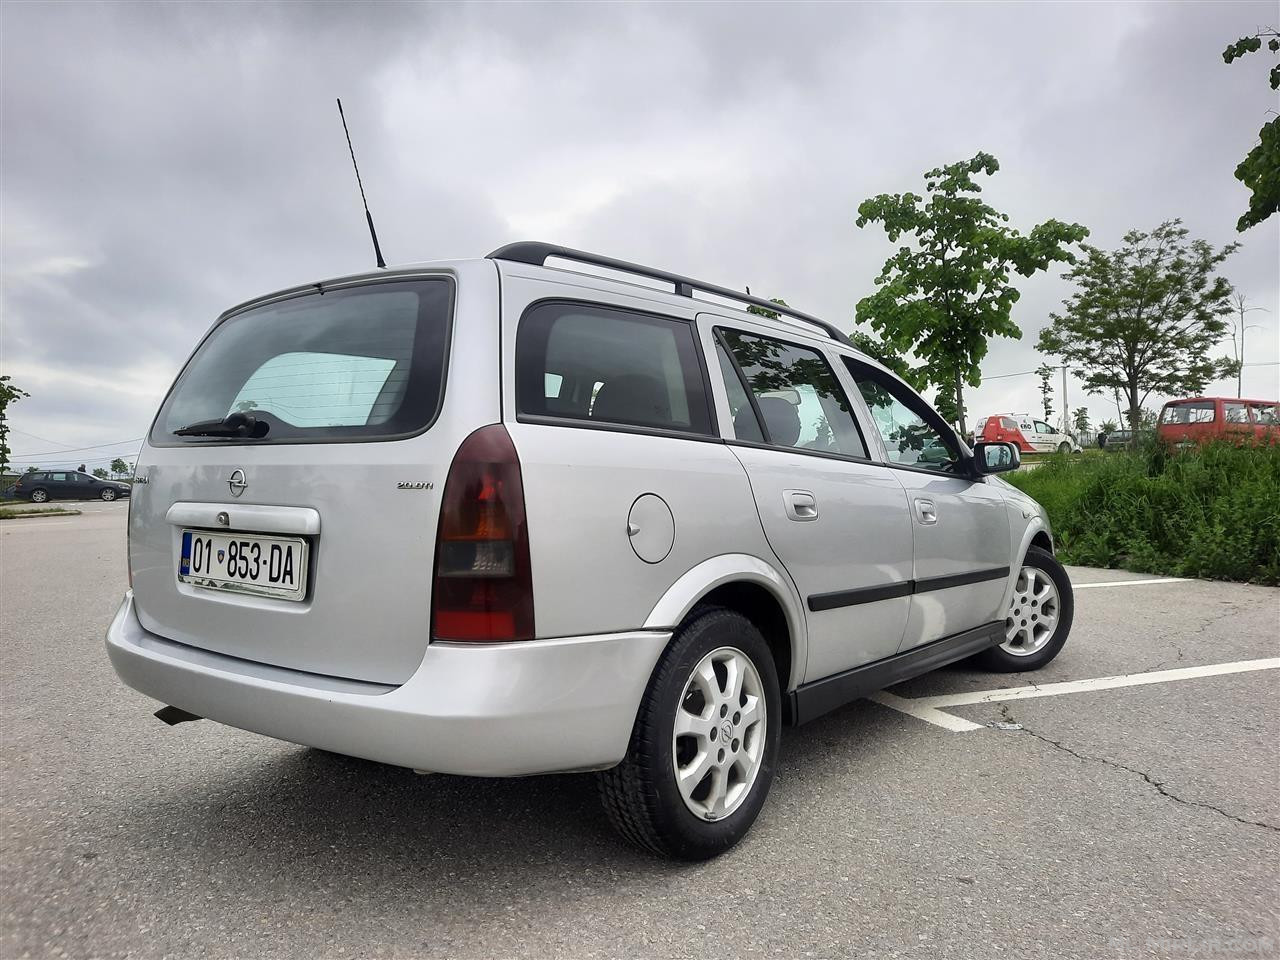 Opel Astra G 2.0 2003 (1 pronar në Kosovë qe 12 vite)